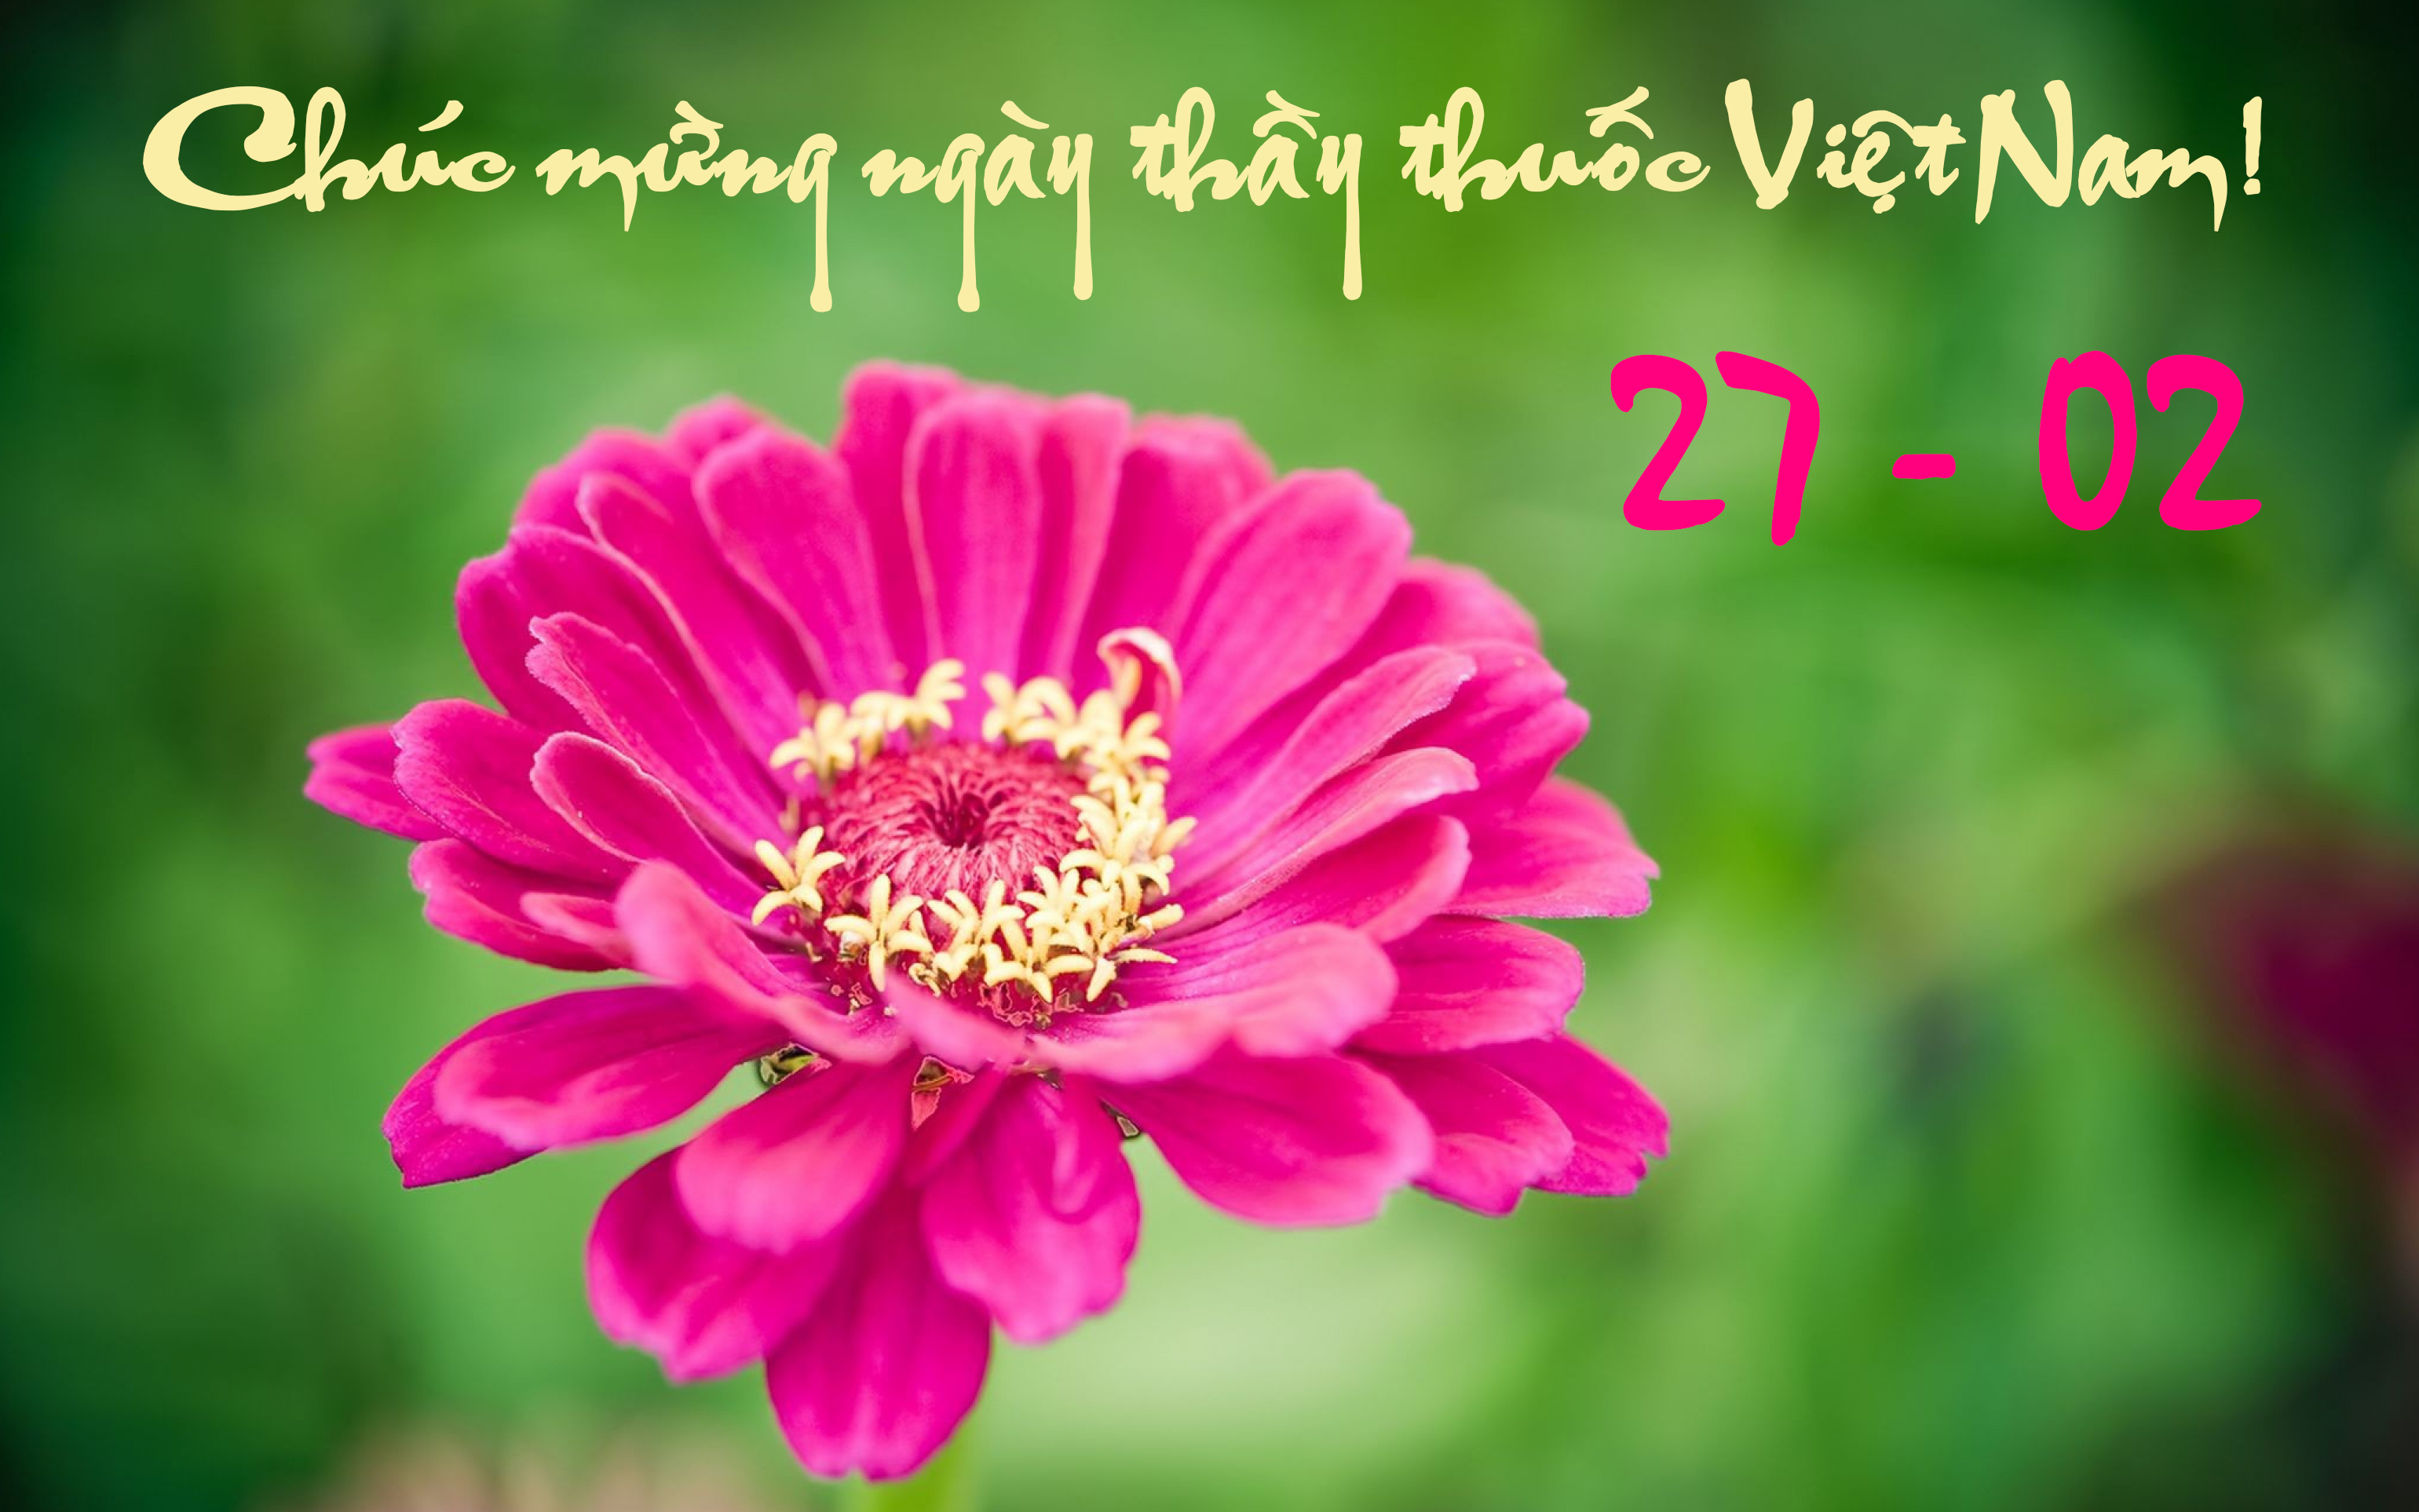 Chúc mừng 60 năm ngày thầy thuốc Việt Nam